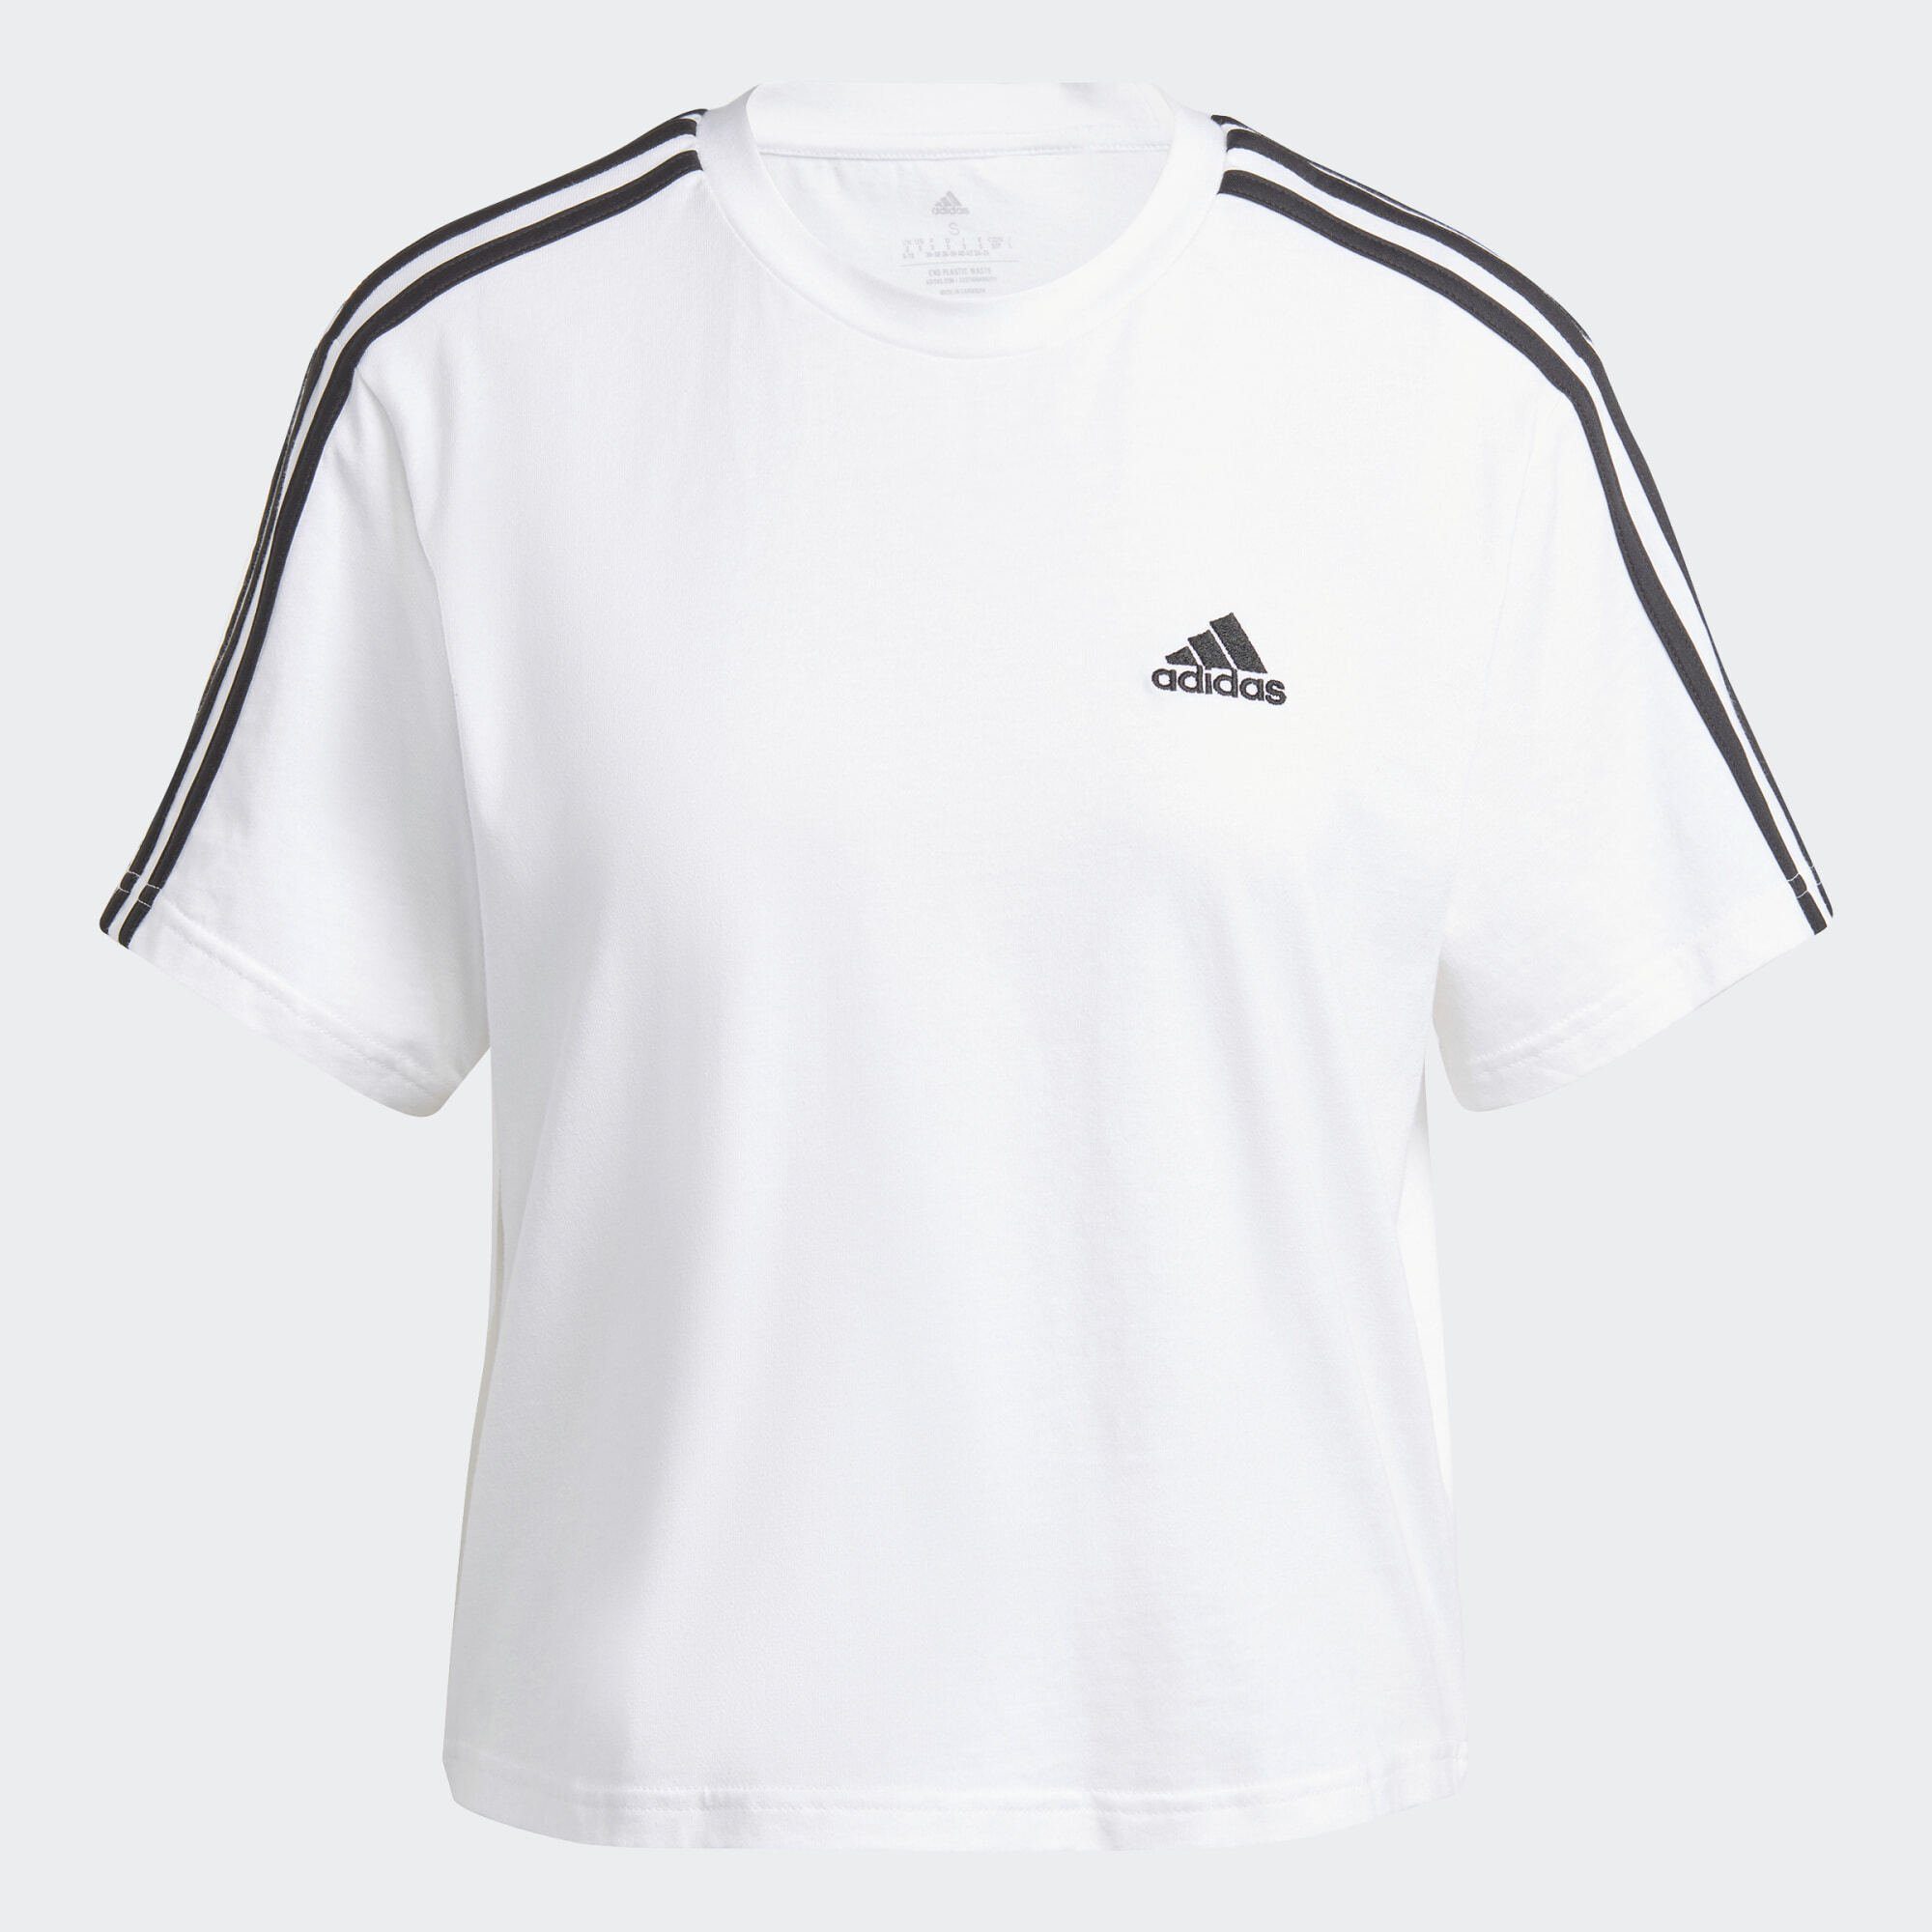 White / JERSEY Black CROP-TOP 3-STREIFEN Sportswear T-Shirt ESSENTIALS adidas SINGLE